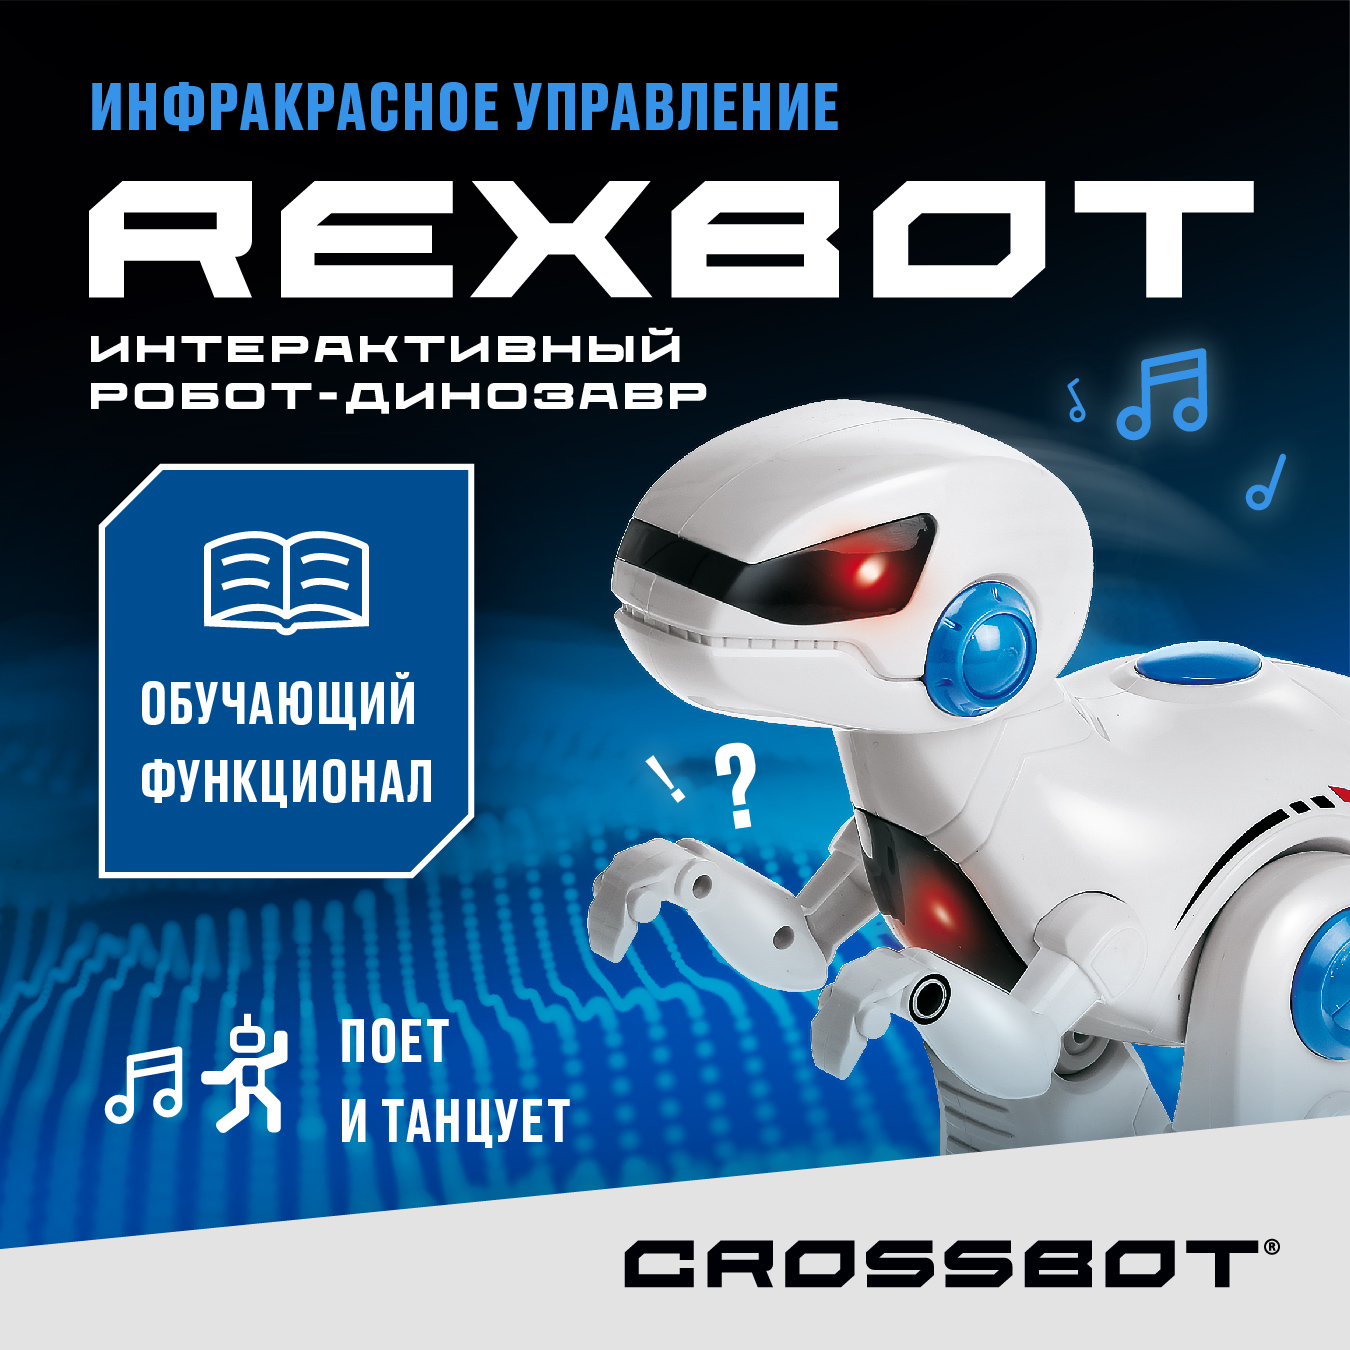 Радиоуправляемая игрушка Робот Динозавр Рекс на пульте Crossbot радиоуправляемый робот динозавр grace house на пульте управления